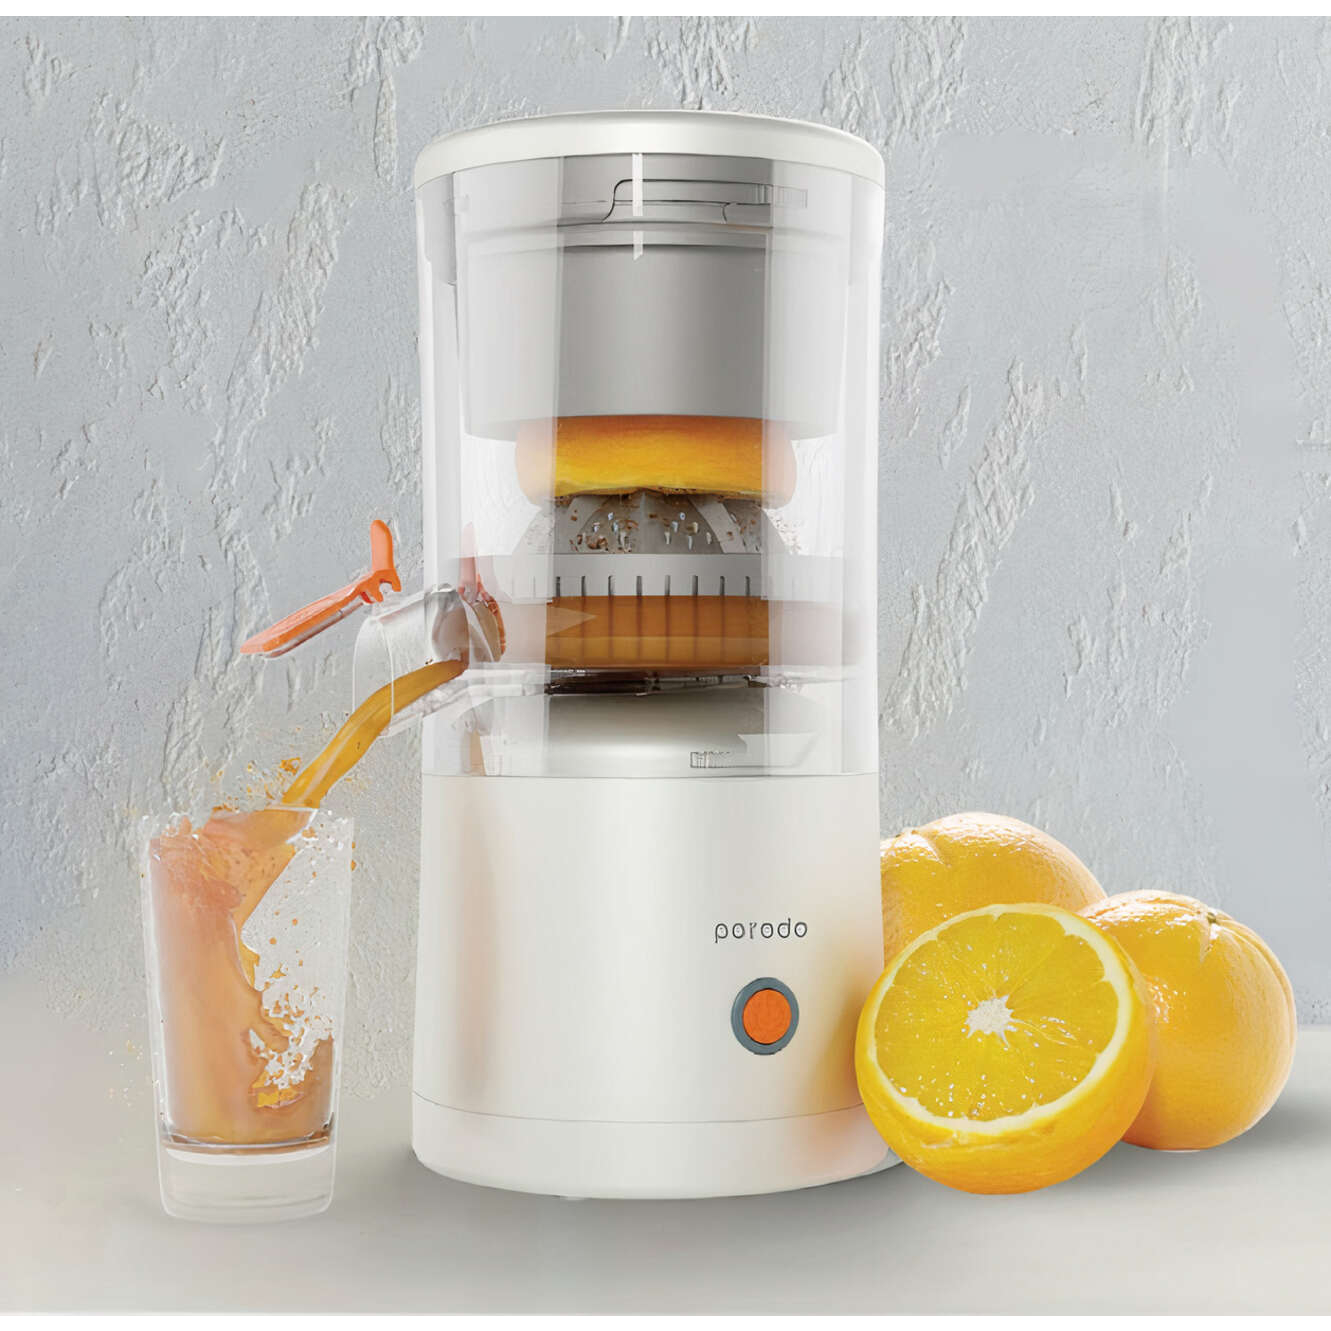 SALUDEA Portable Citrus Juicer